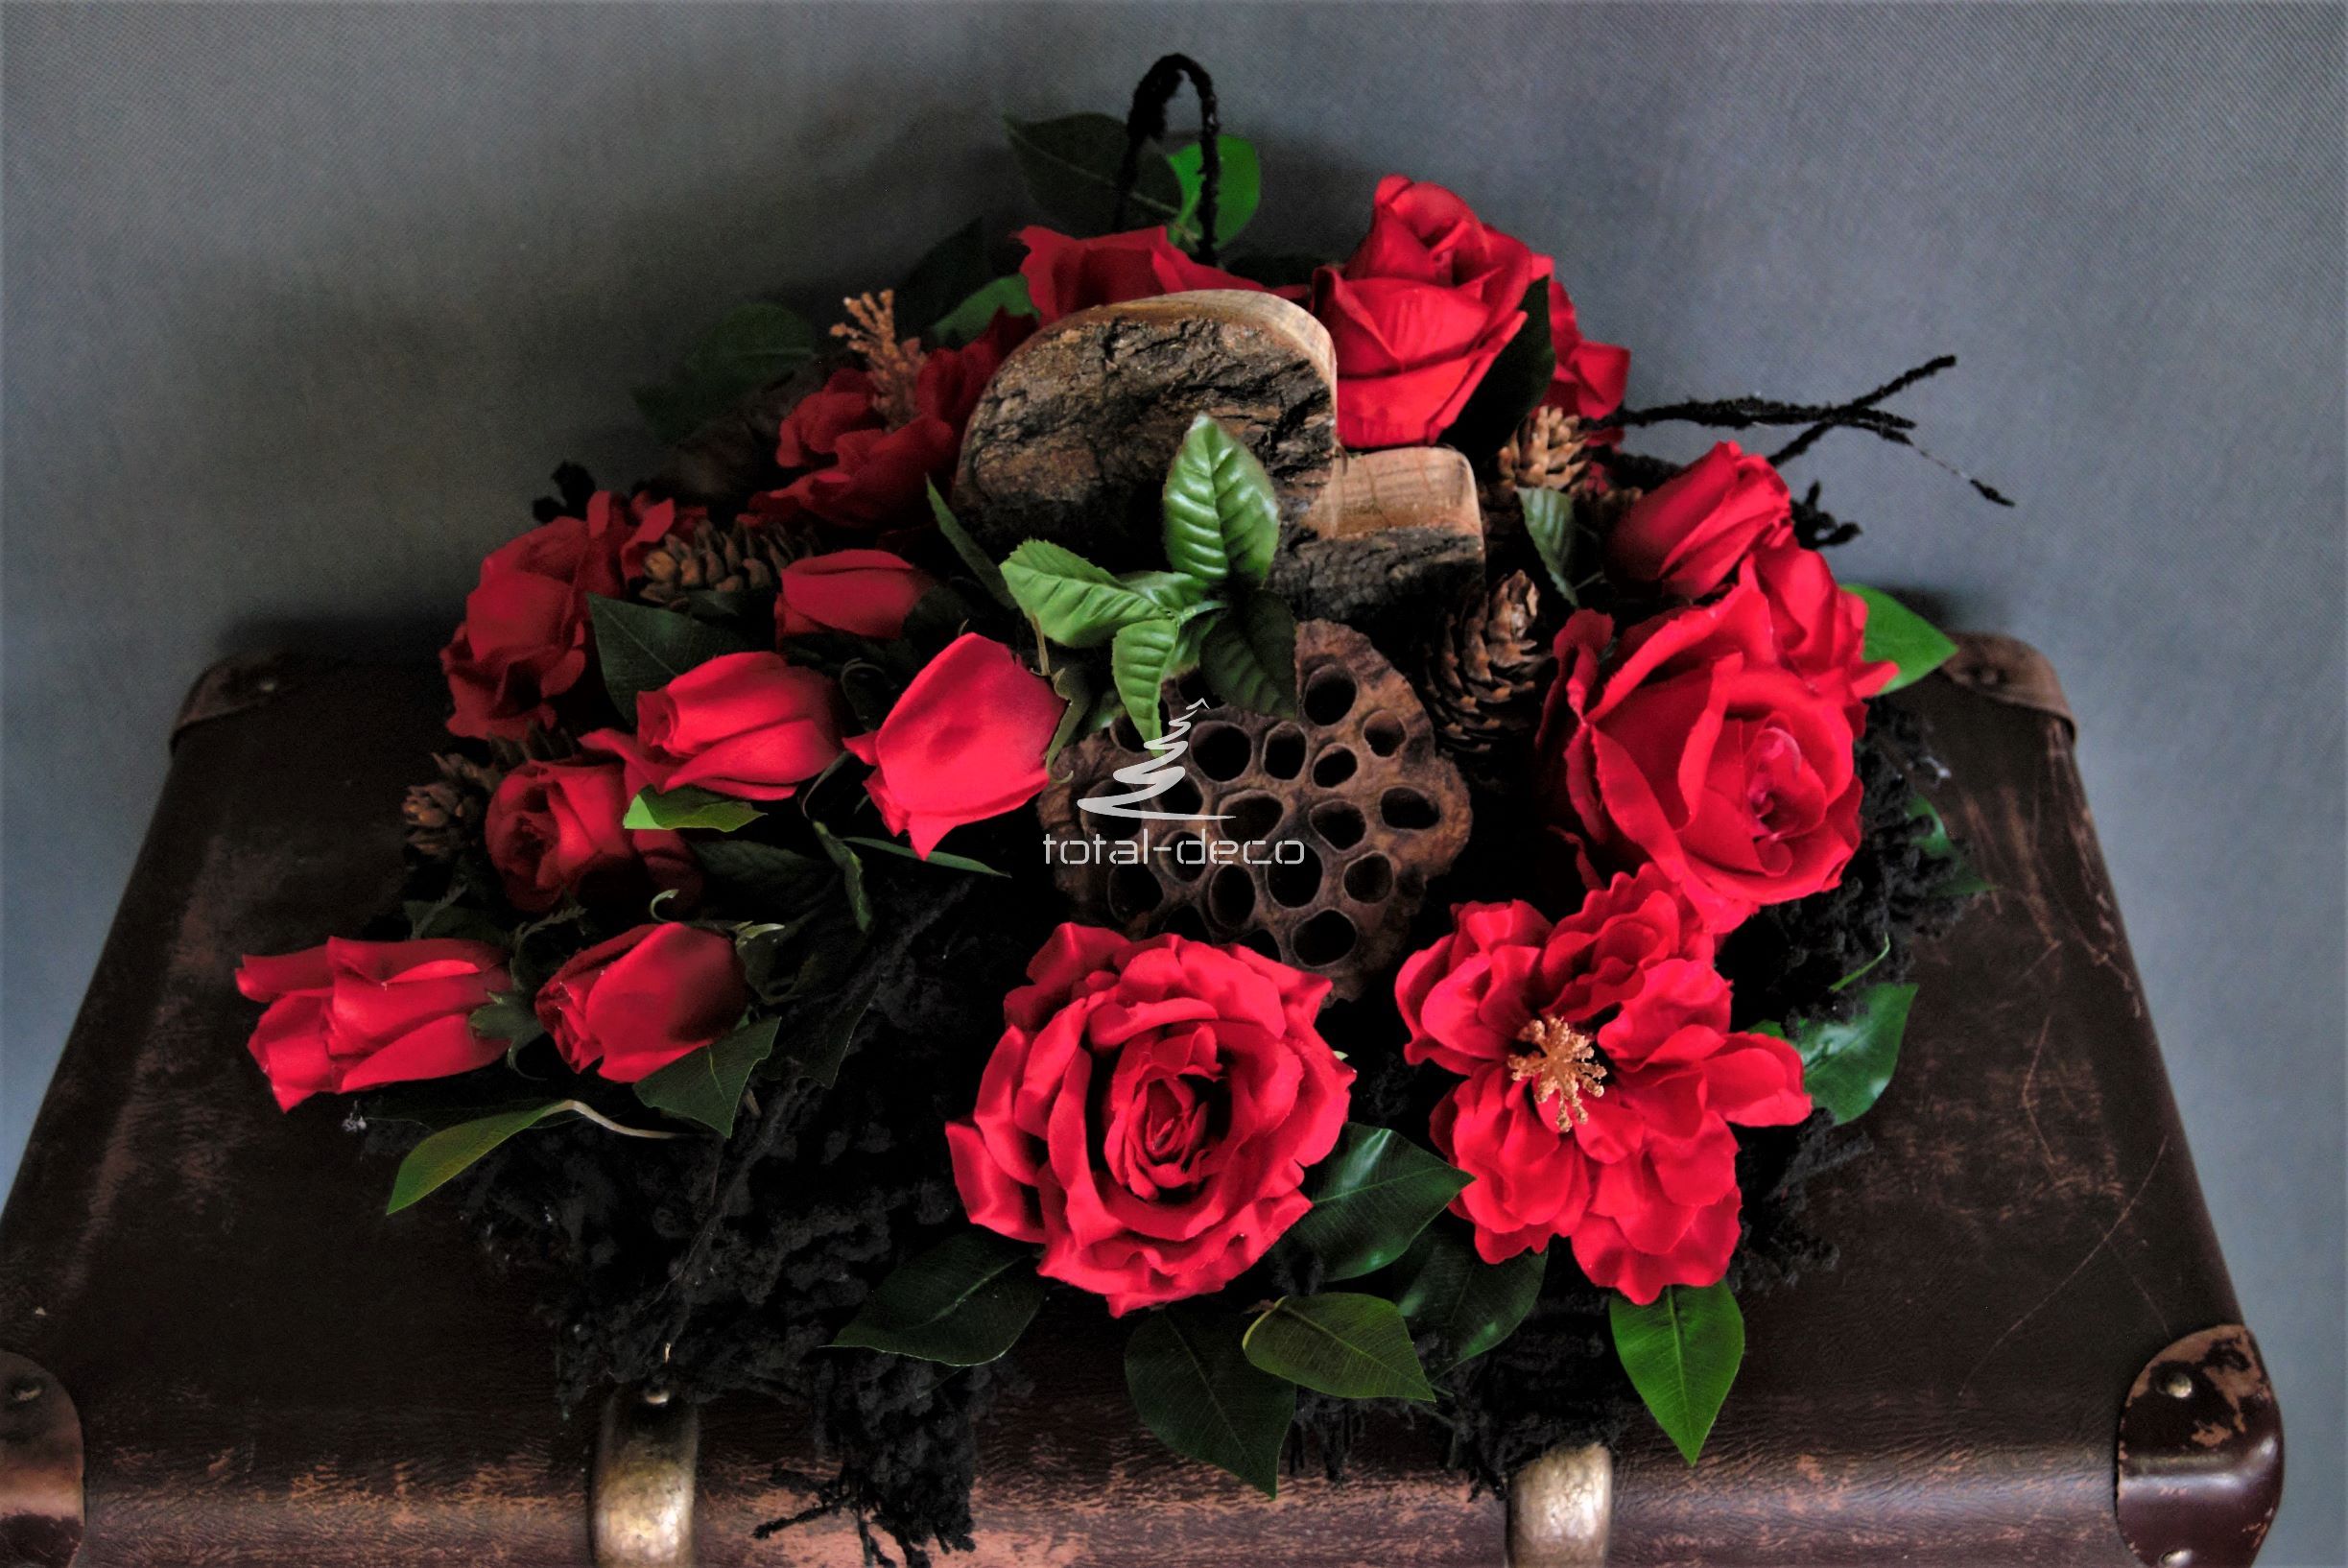 dekoracja nagrobna stroik na cmentarz z czerwonymi różami sztucznymi